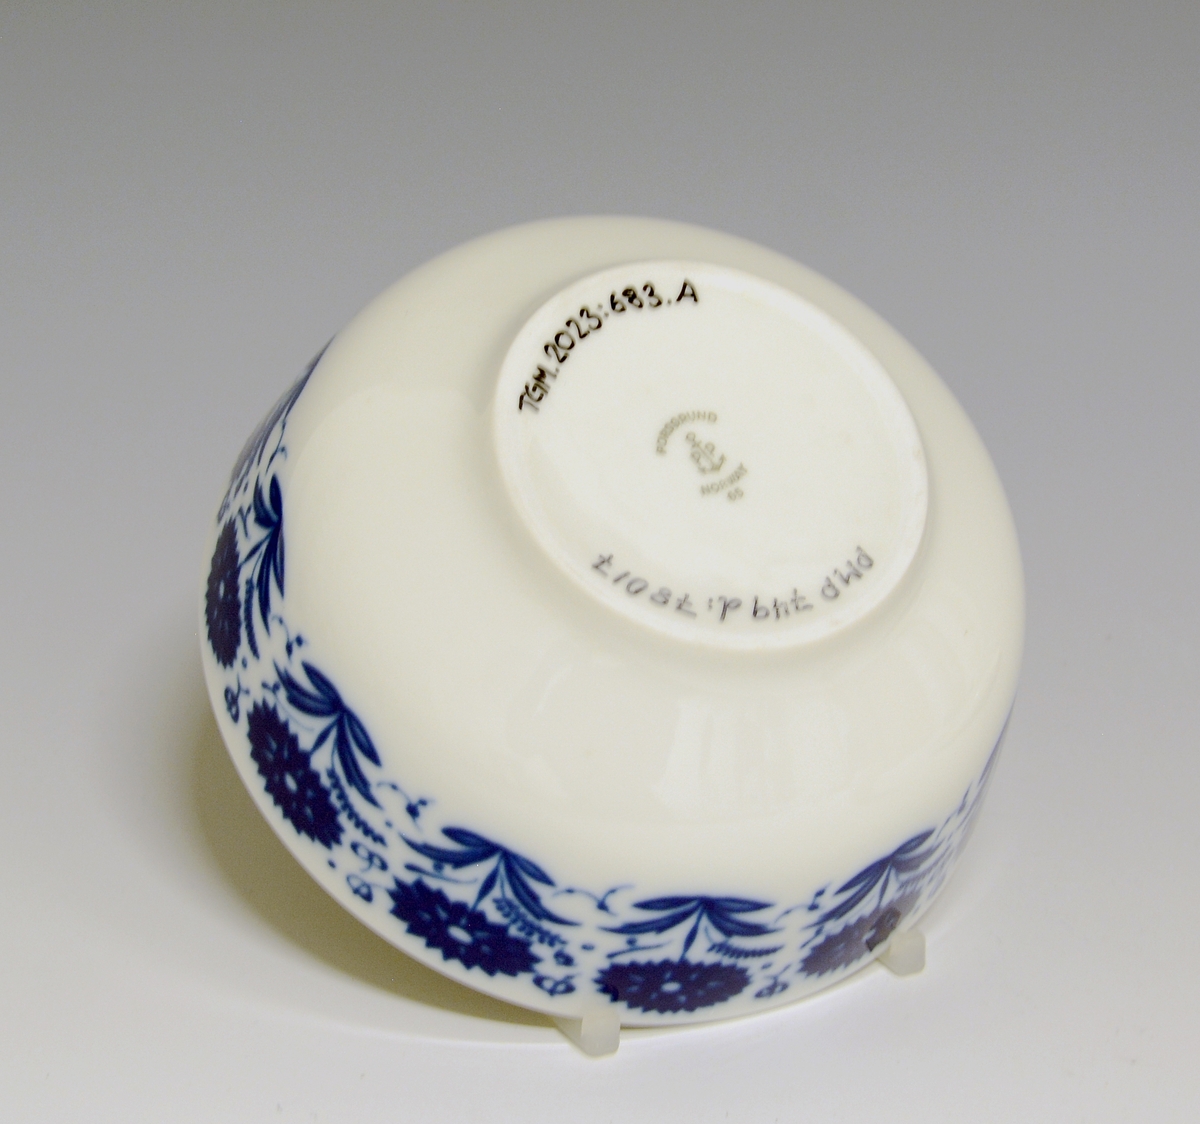 Sausebolle med fat, av porselen. Dekorert med blomsterdekor i blå iglasur trykkdekor.
Modell: Meny, 2310 av Tias Eckhoff, i produksjon fra 1955.
Dekor: Nellik av Anne-Marie Ødegaard fra 1957.